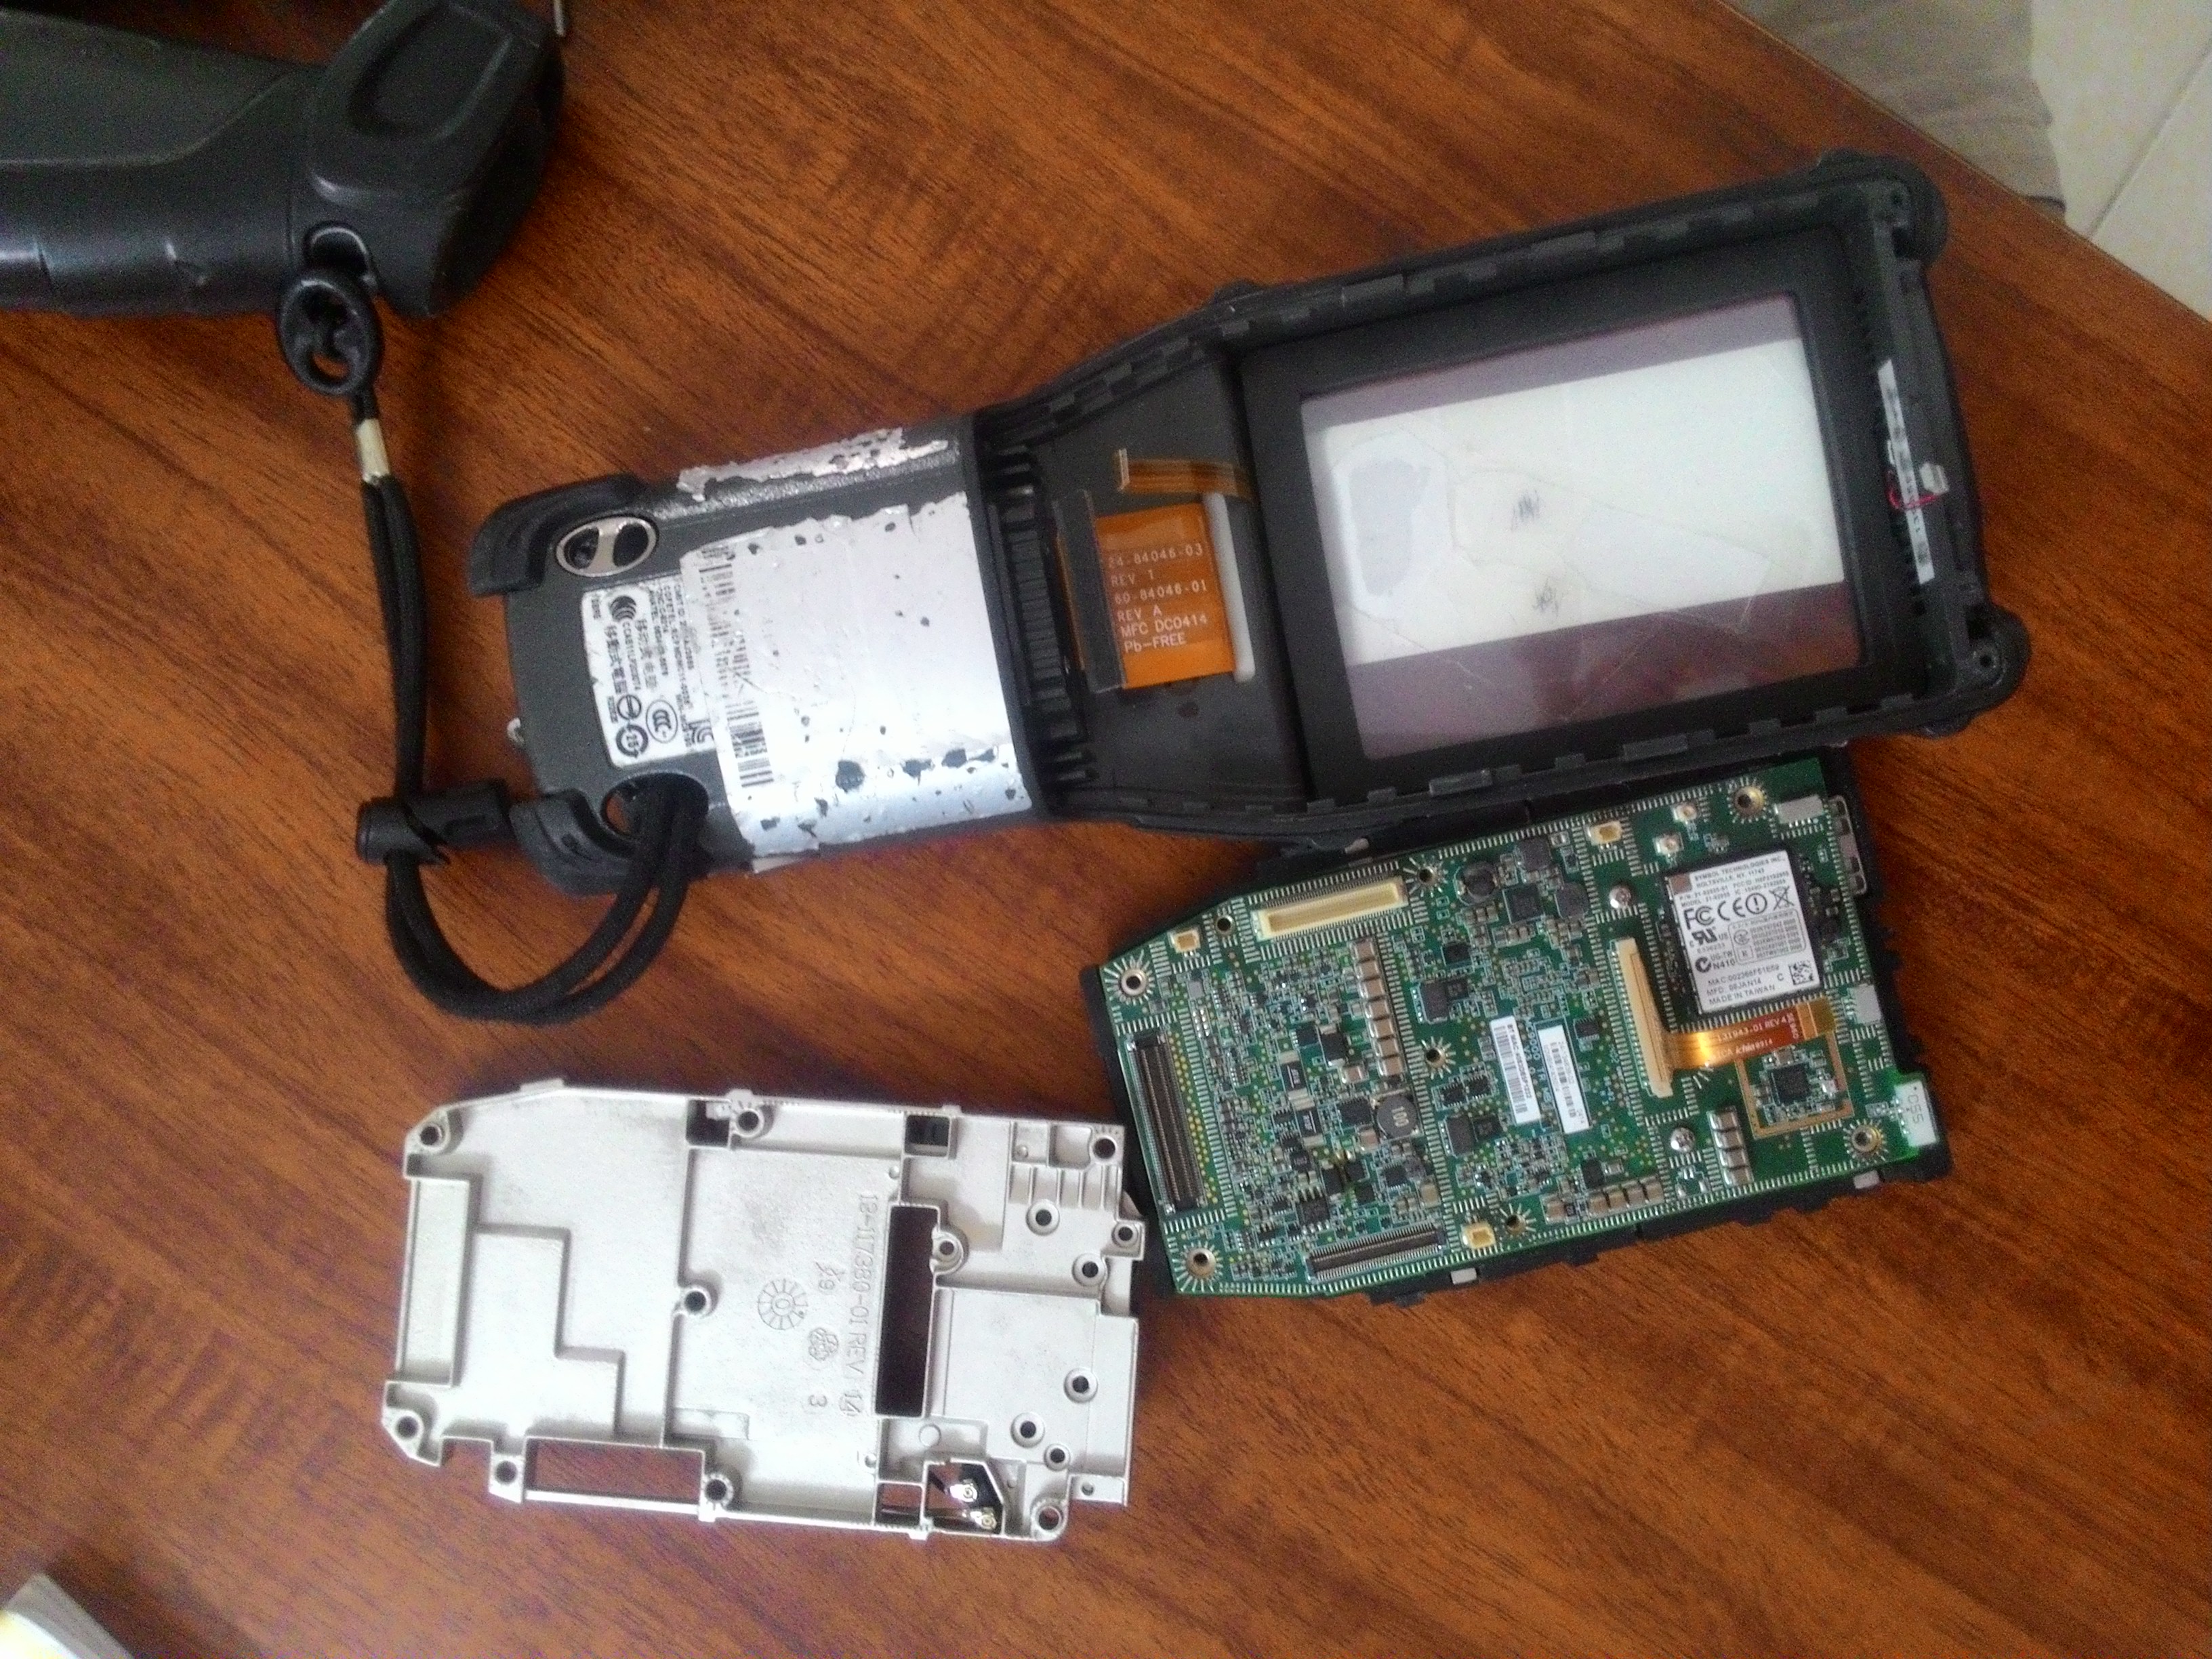 sua chua may quet kiem kho Symbol Motorola MC3190 - PDA repair